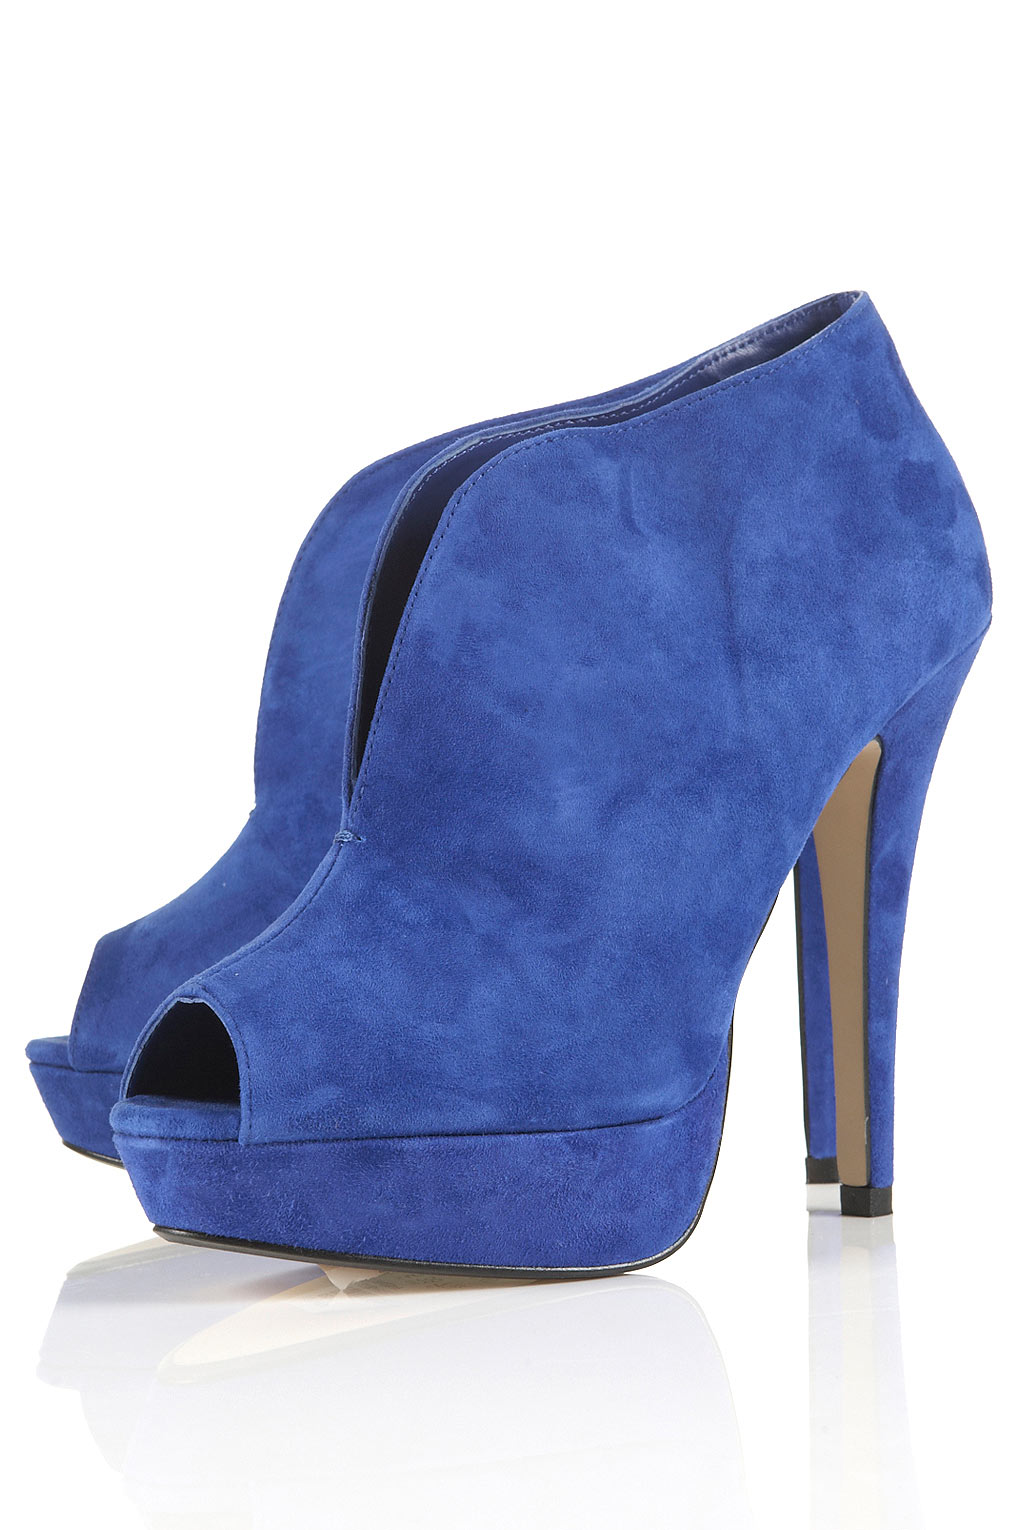 mavi suet topuklu ayakkabi modelleri En Güzel Farklı Ayakkabı Modelleri 12